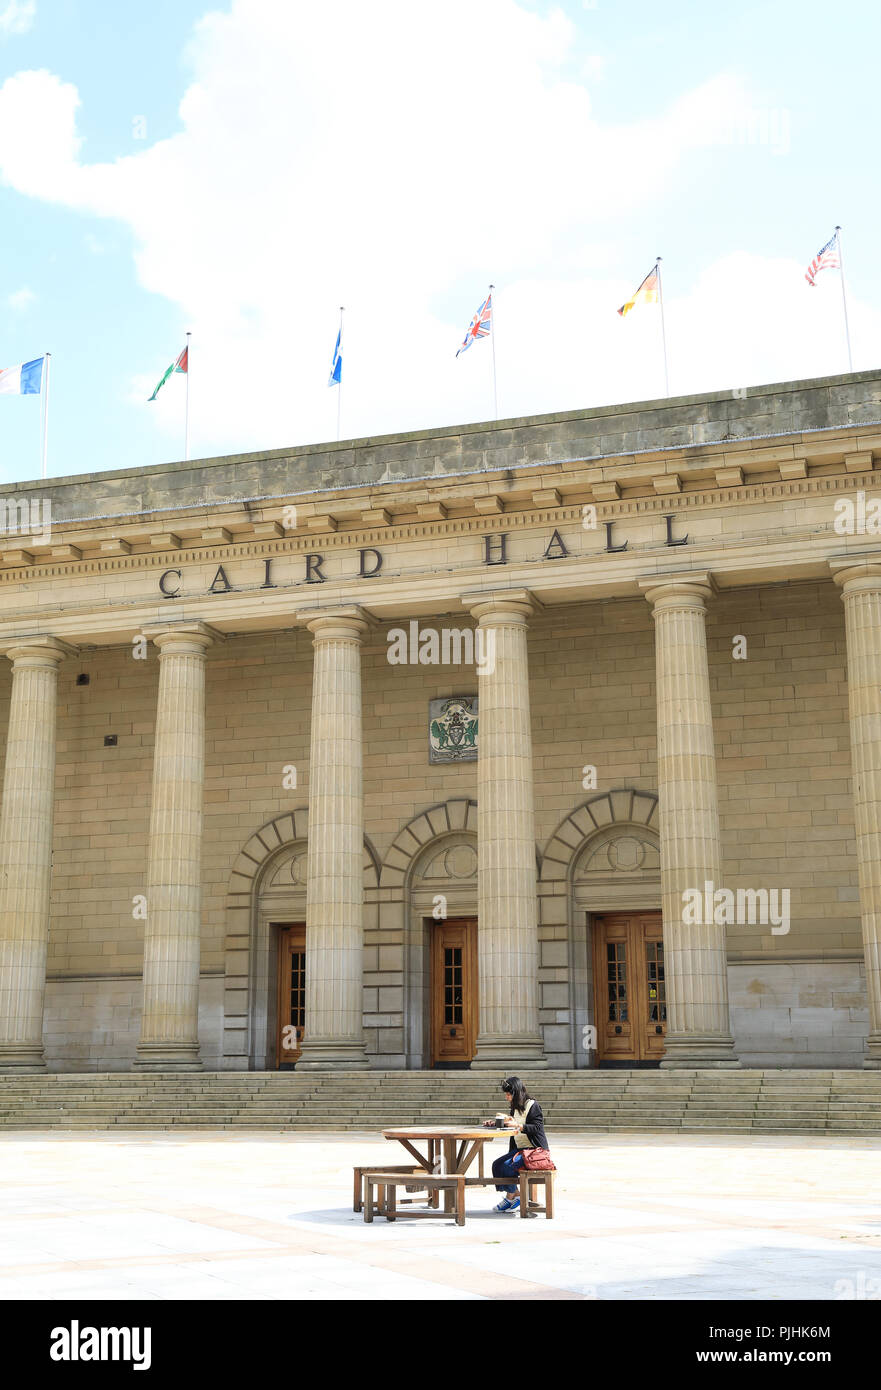 Caird Hall, un concert auditorium sur City Square, dans le centre de Dundee, sur Tayside, en Ecosse, Royaume-Uni Banque D'Images